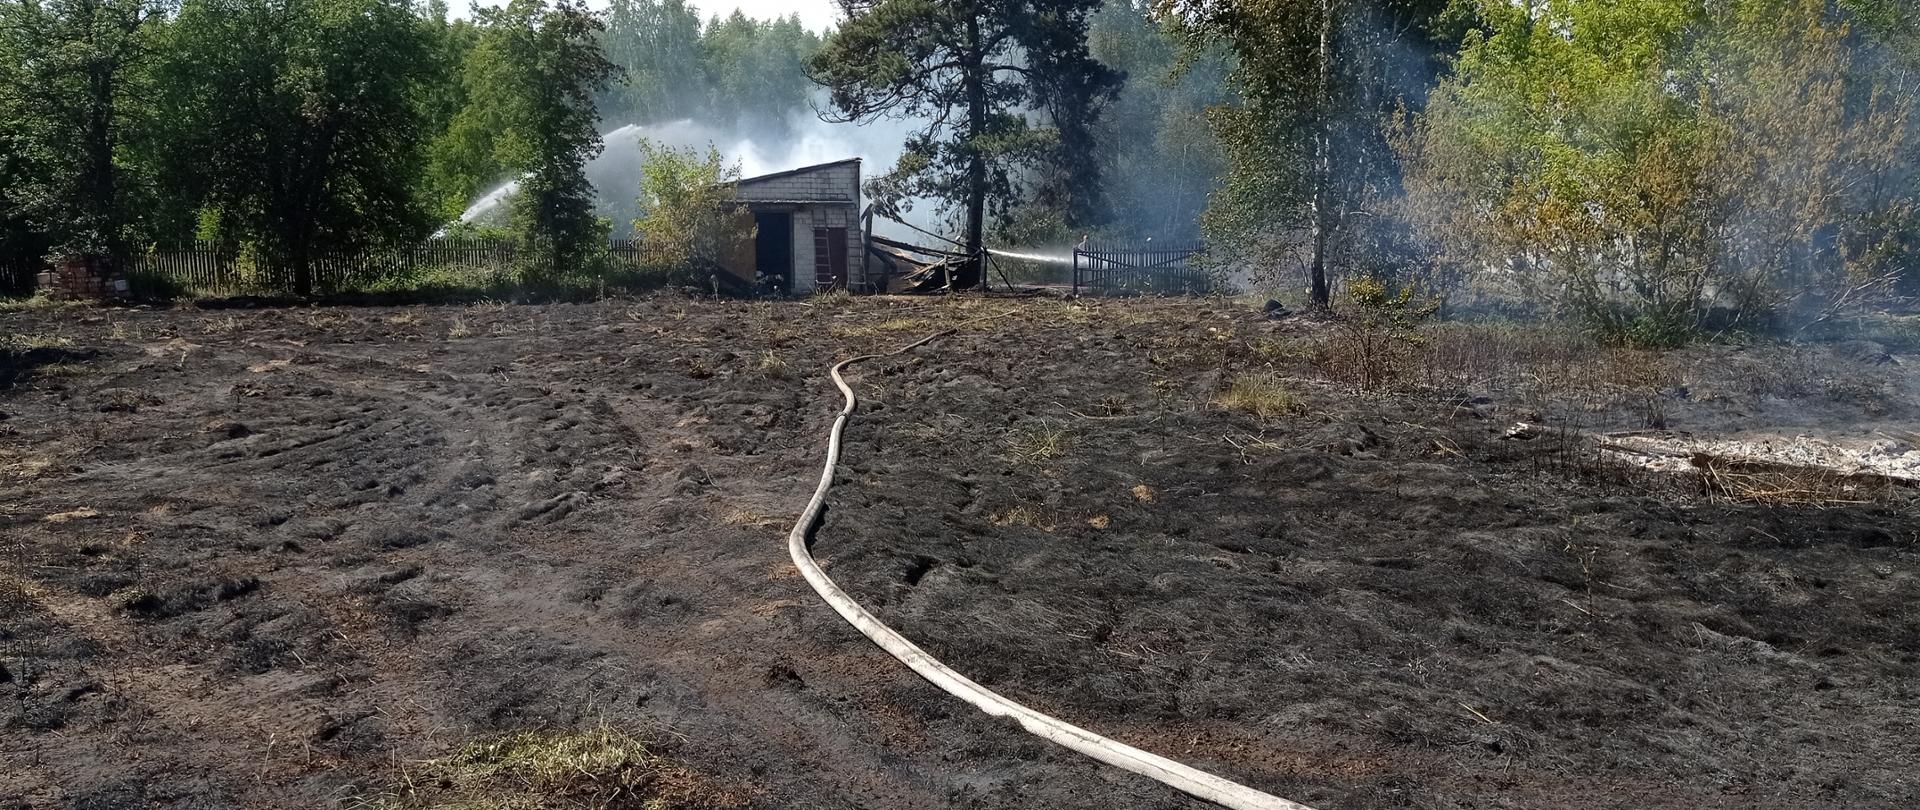 Na zdjęciu widoczne jest pogorzelisko po pożarze trawy. W oddali widać kłęby niebieskiego dymu. Przez środek biegnie linia wężowa która prowadzi do palącego się budynku gospodarczego. Na zdjęciu widać nadpalone drzewa.